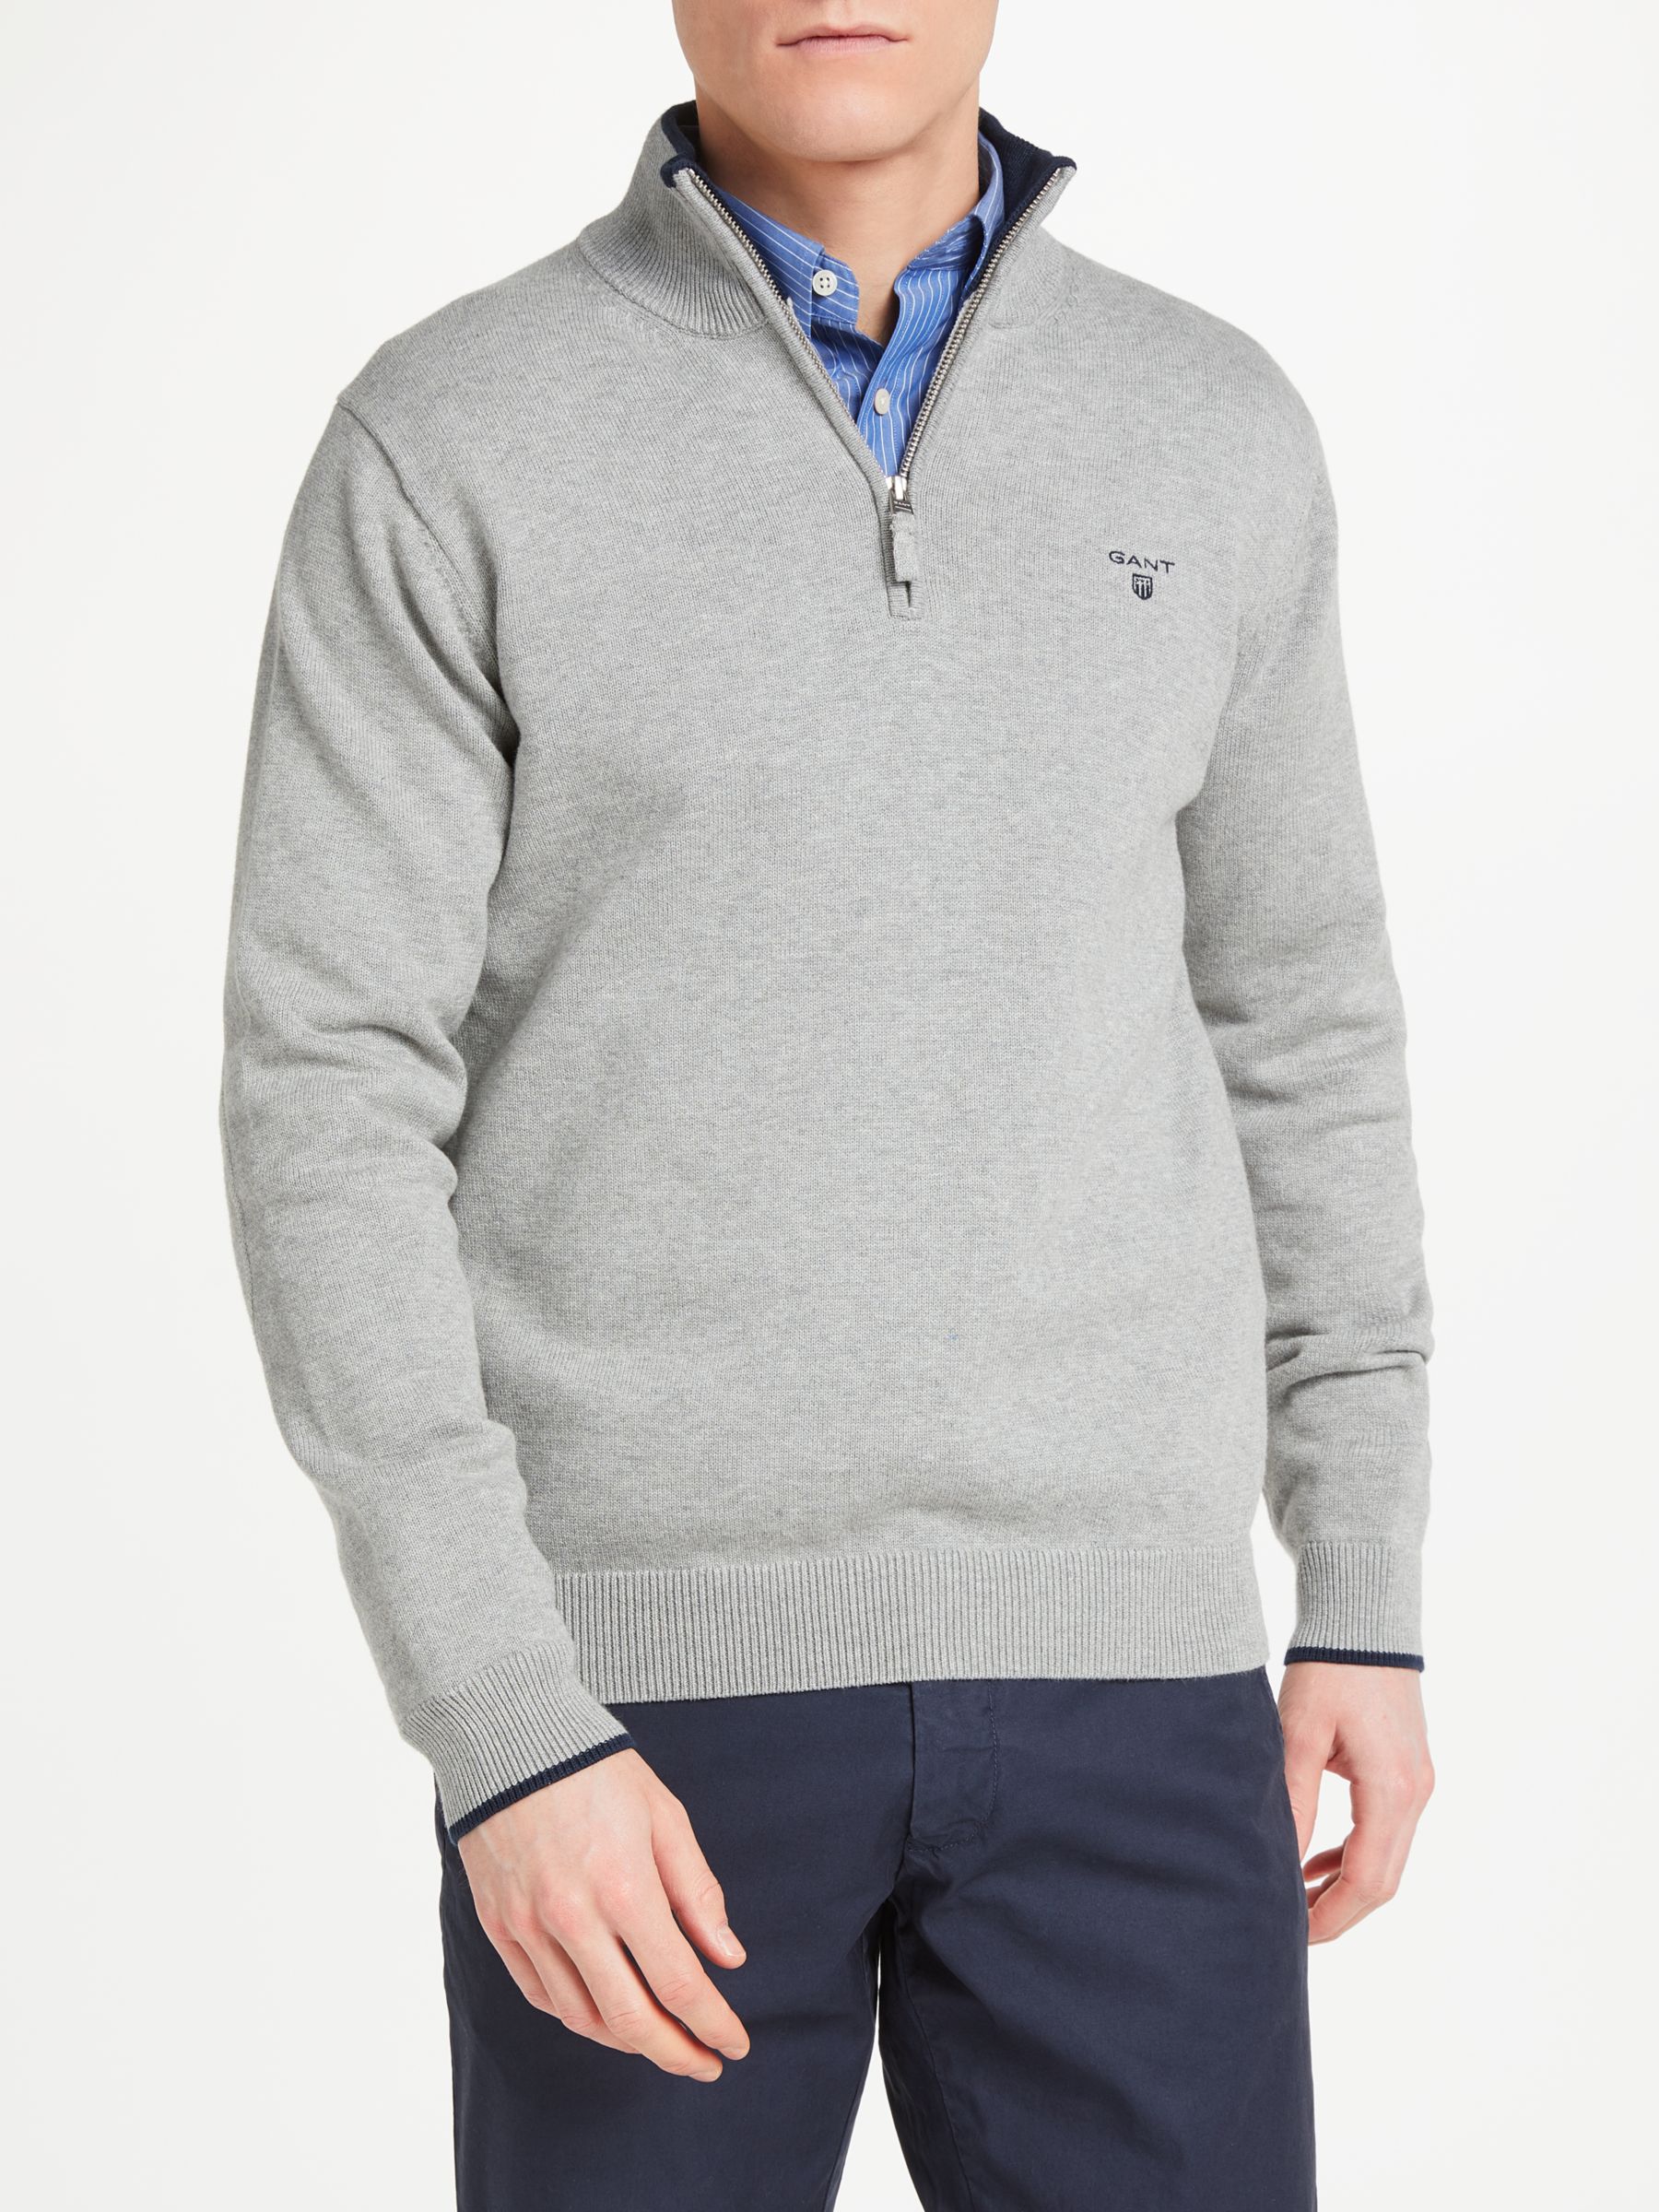 GANT Cotton Contrast Half Zip Sweatshirt, Grey, L